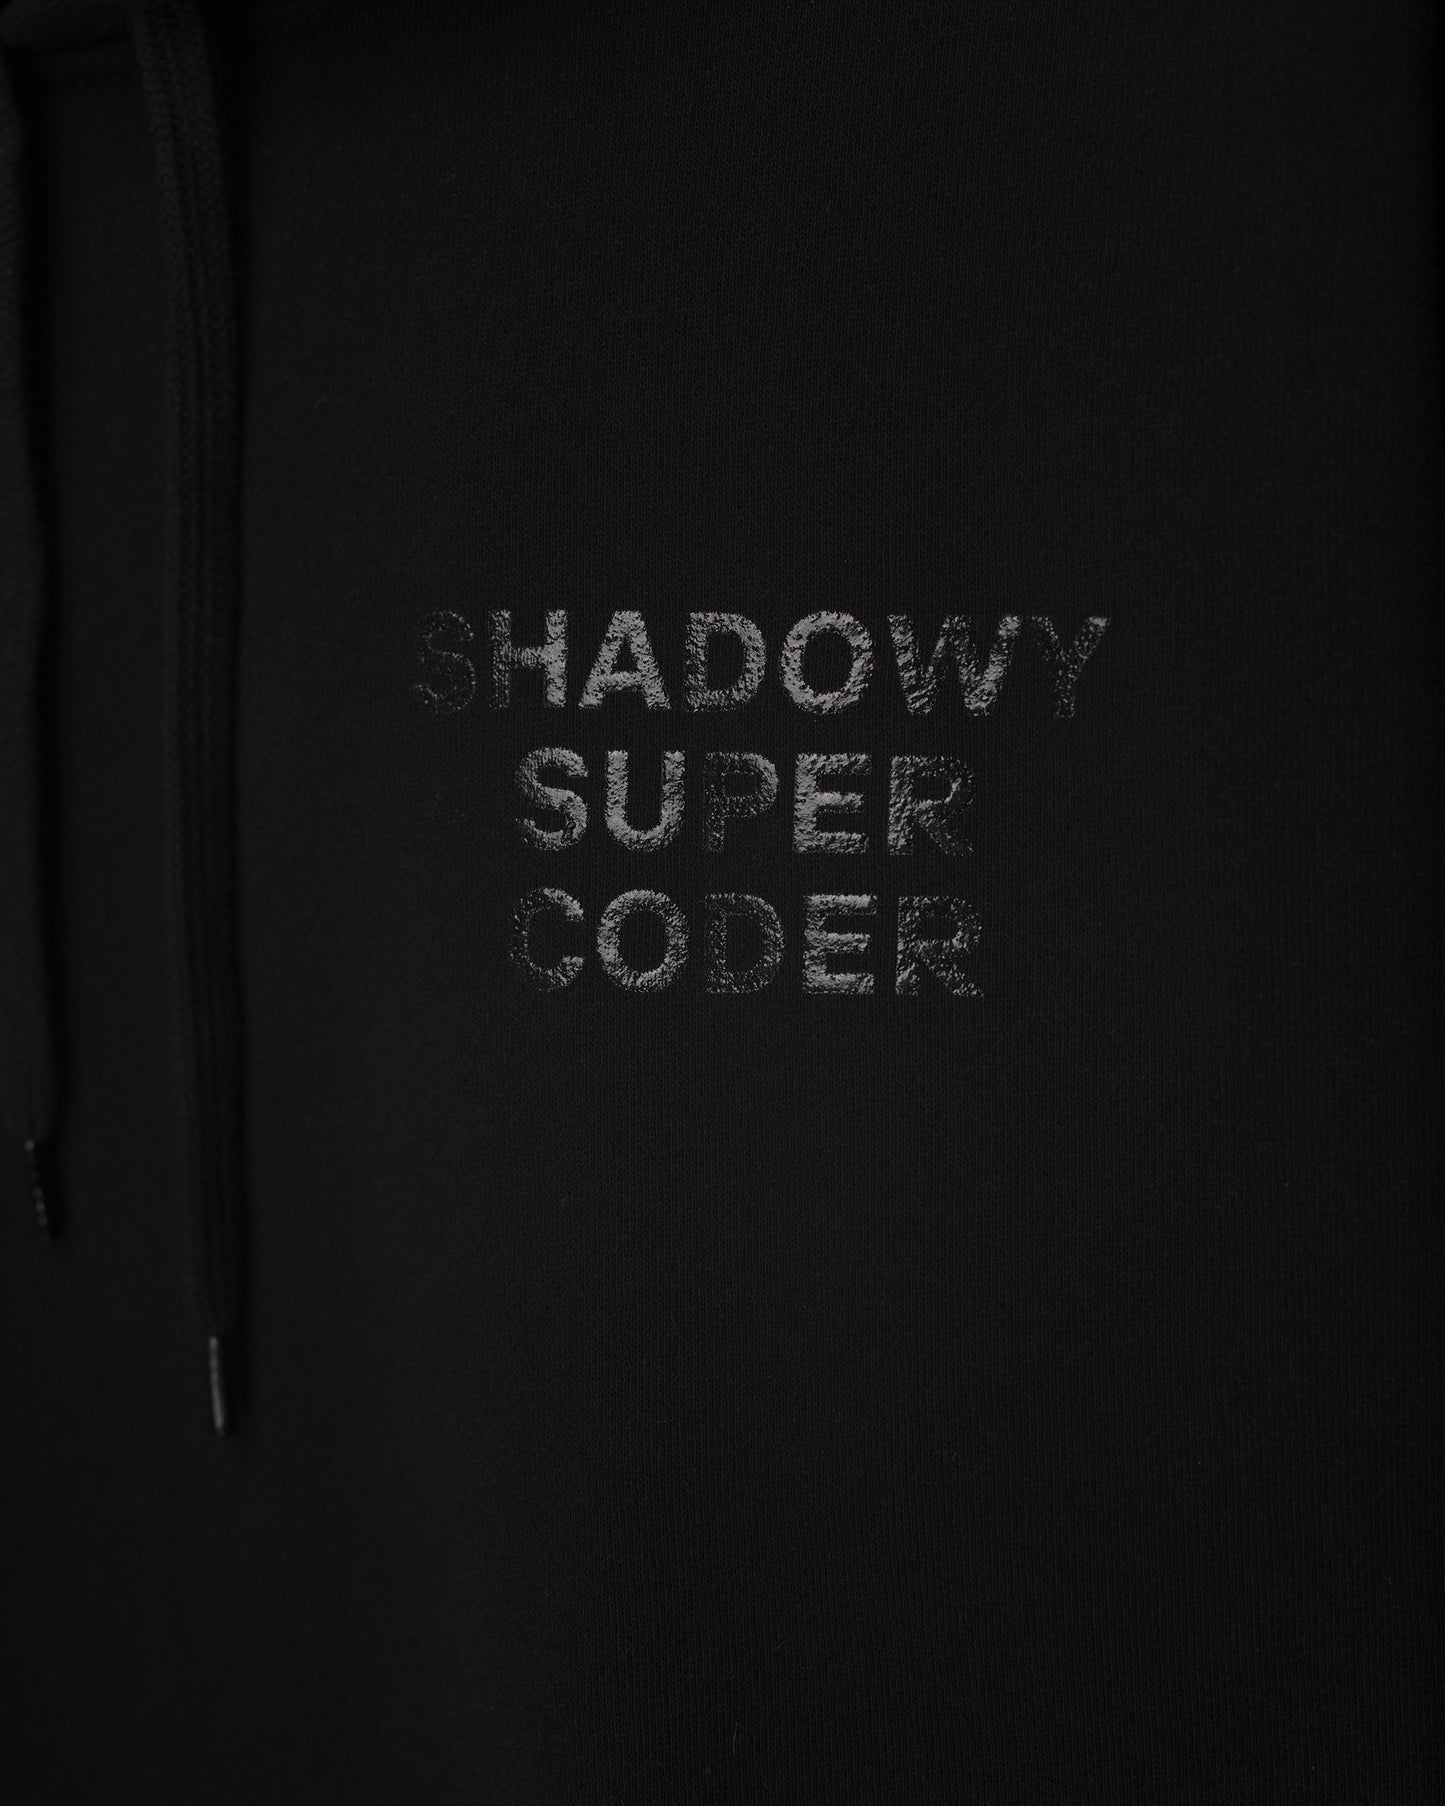 Shadowy Super Coder Hoodie